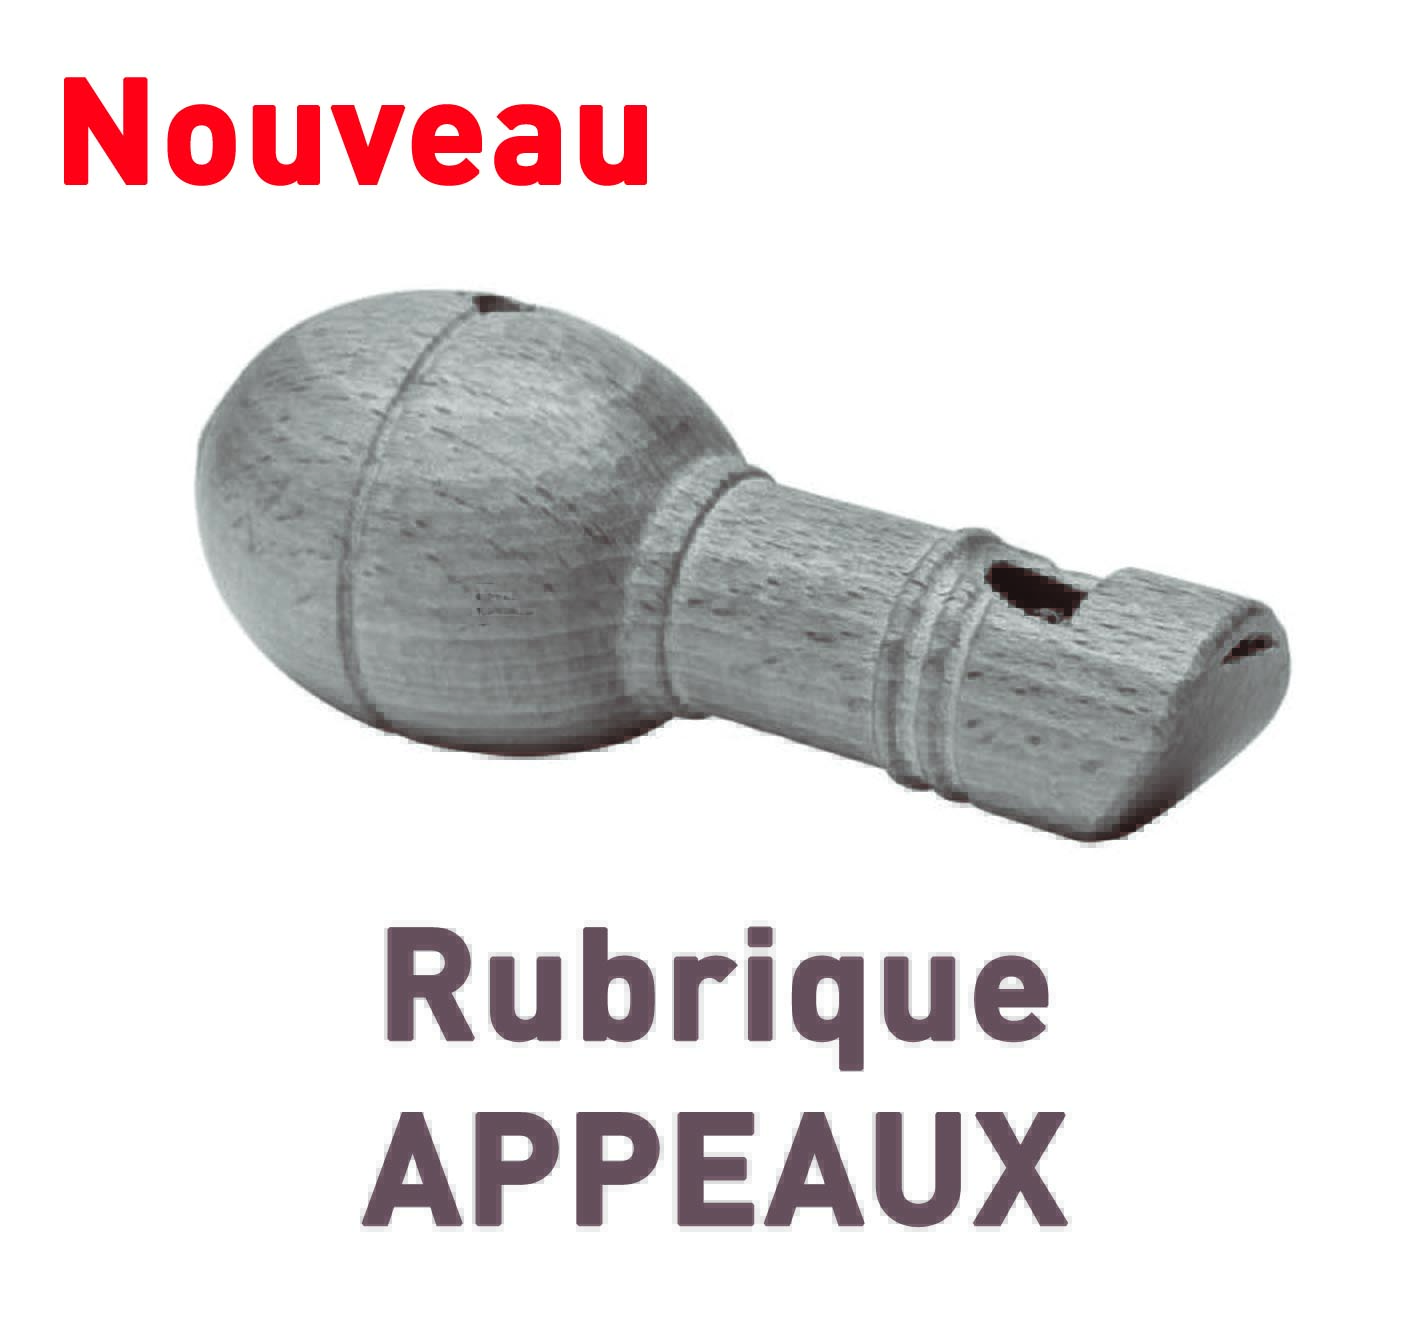 Rubrique APPEAUX